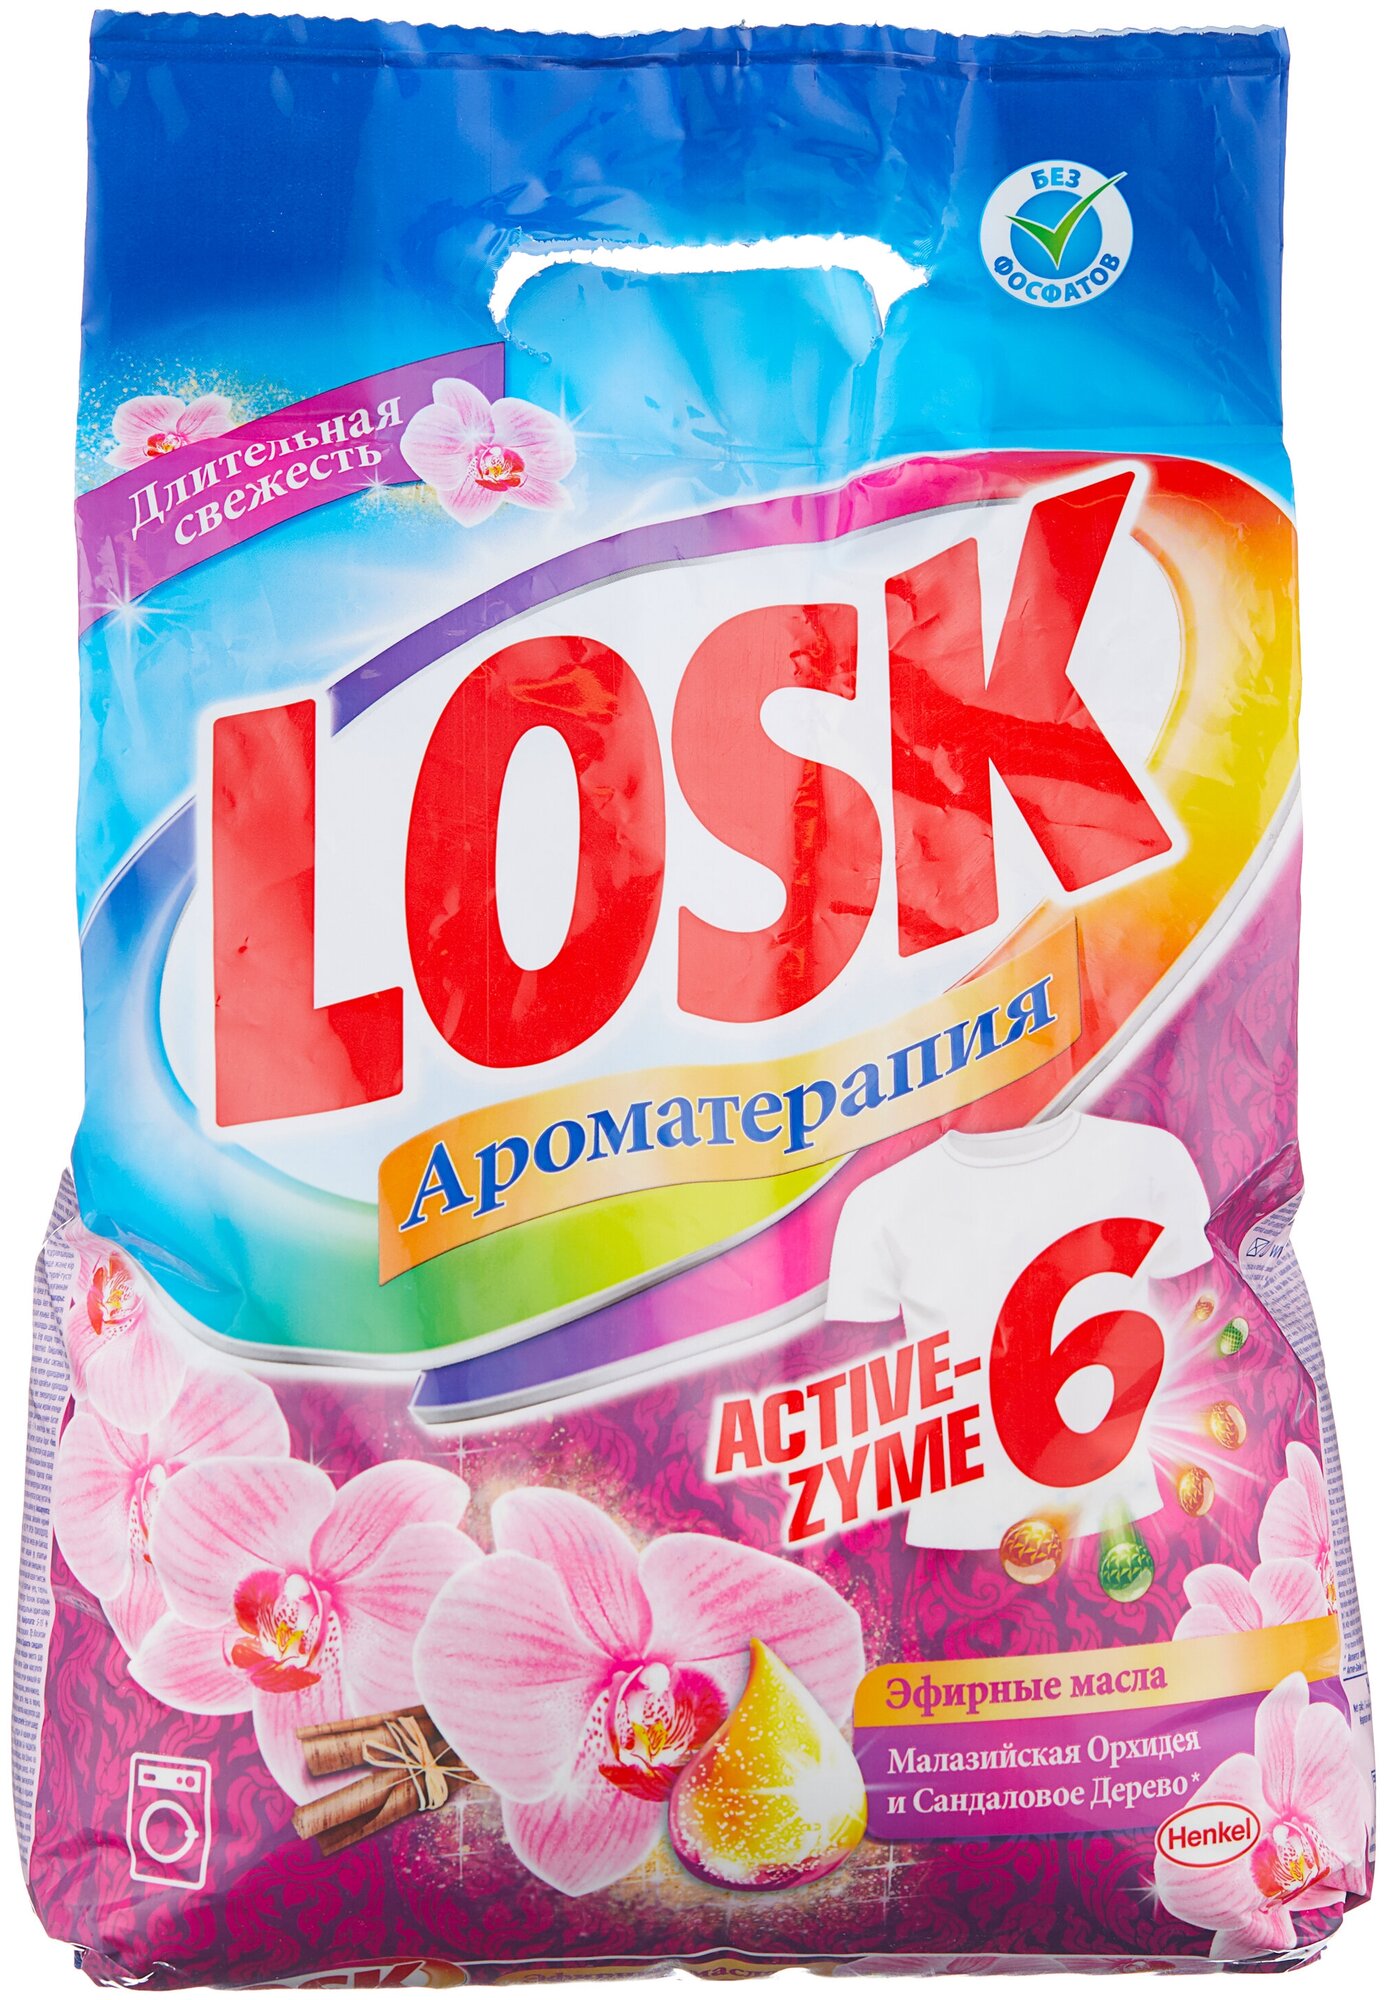 Стиральный порошок Losk Active-Zyme 6 Ароматерапия Эфирные масла 2.7кг Henkel - фото №1